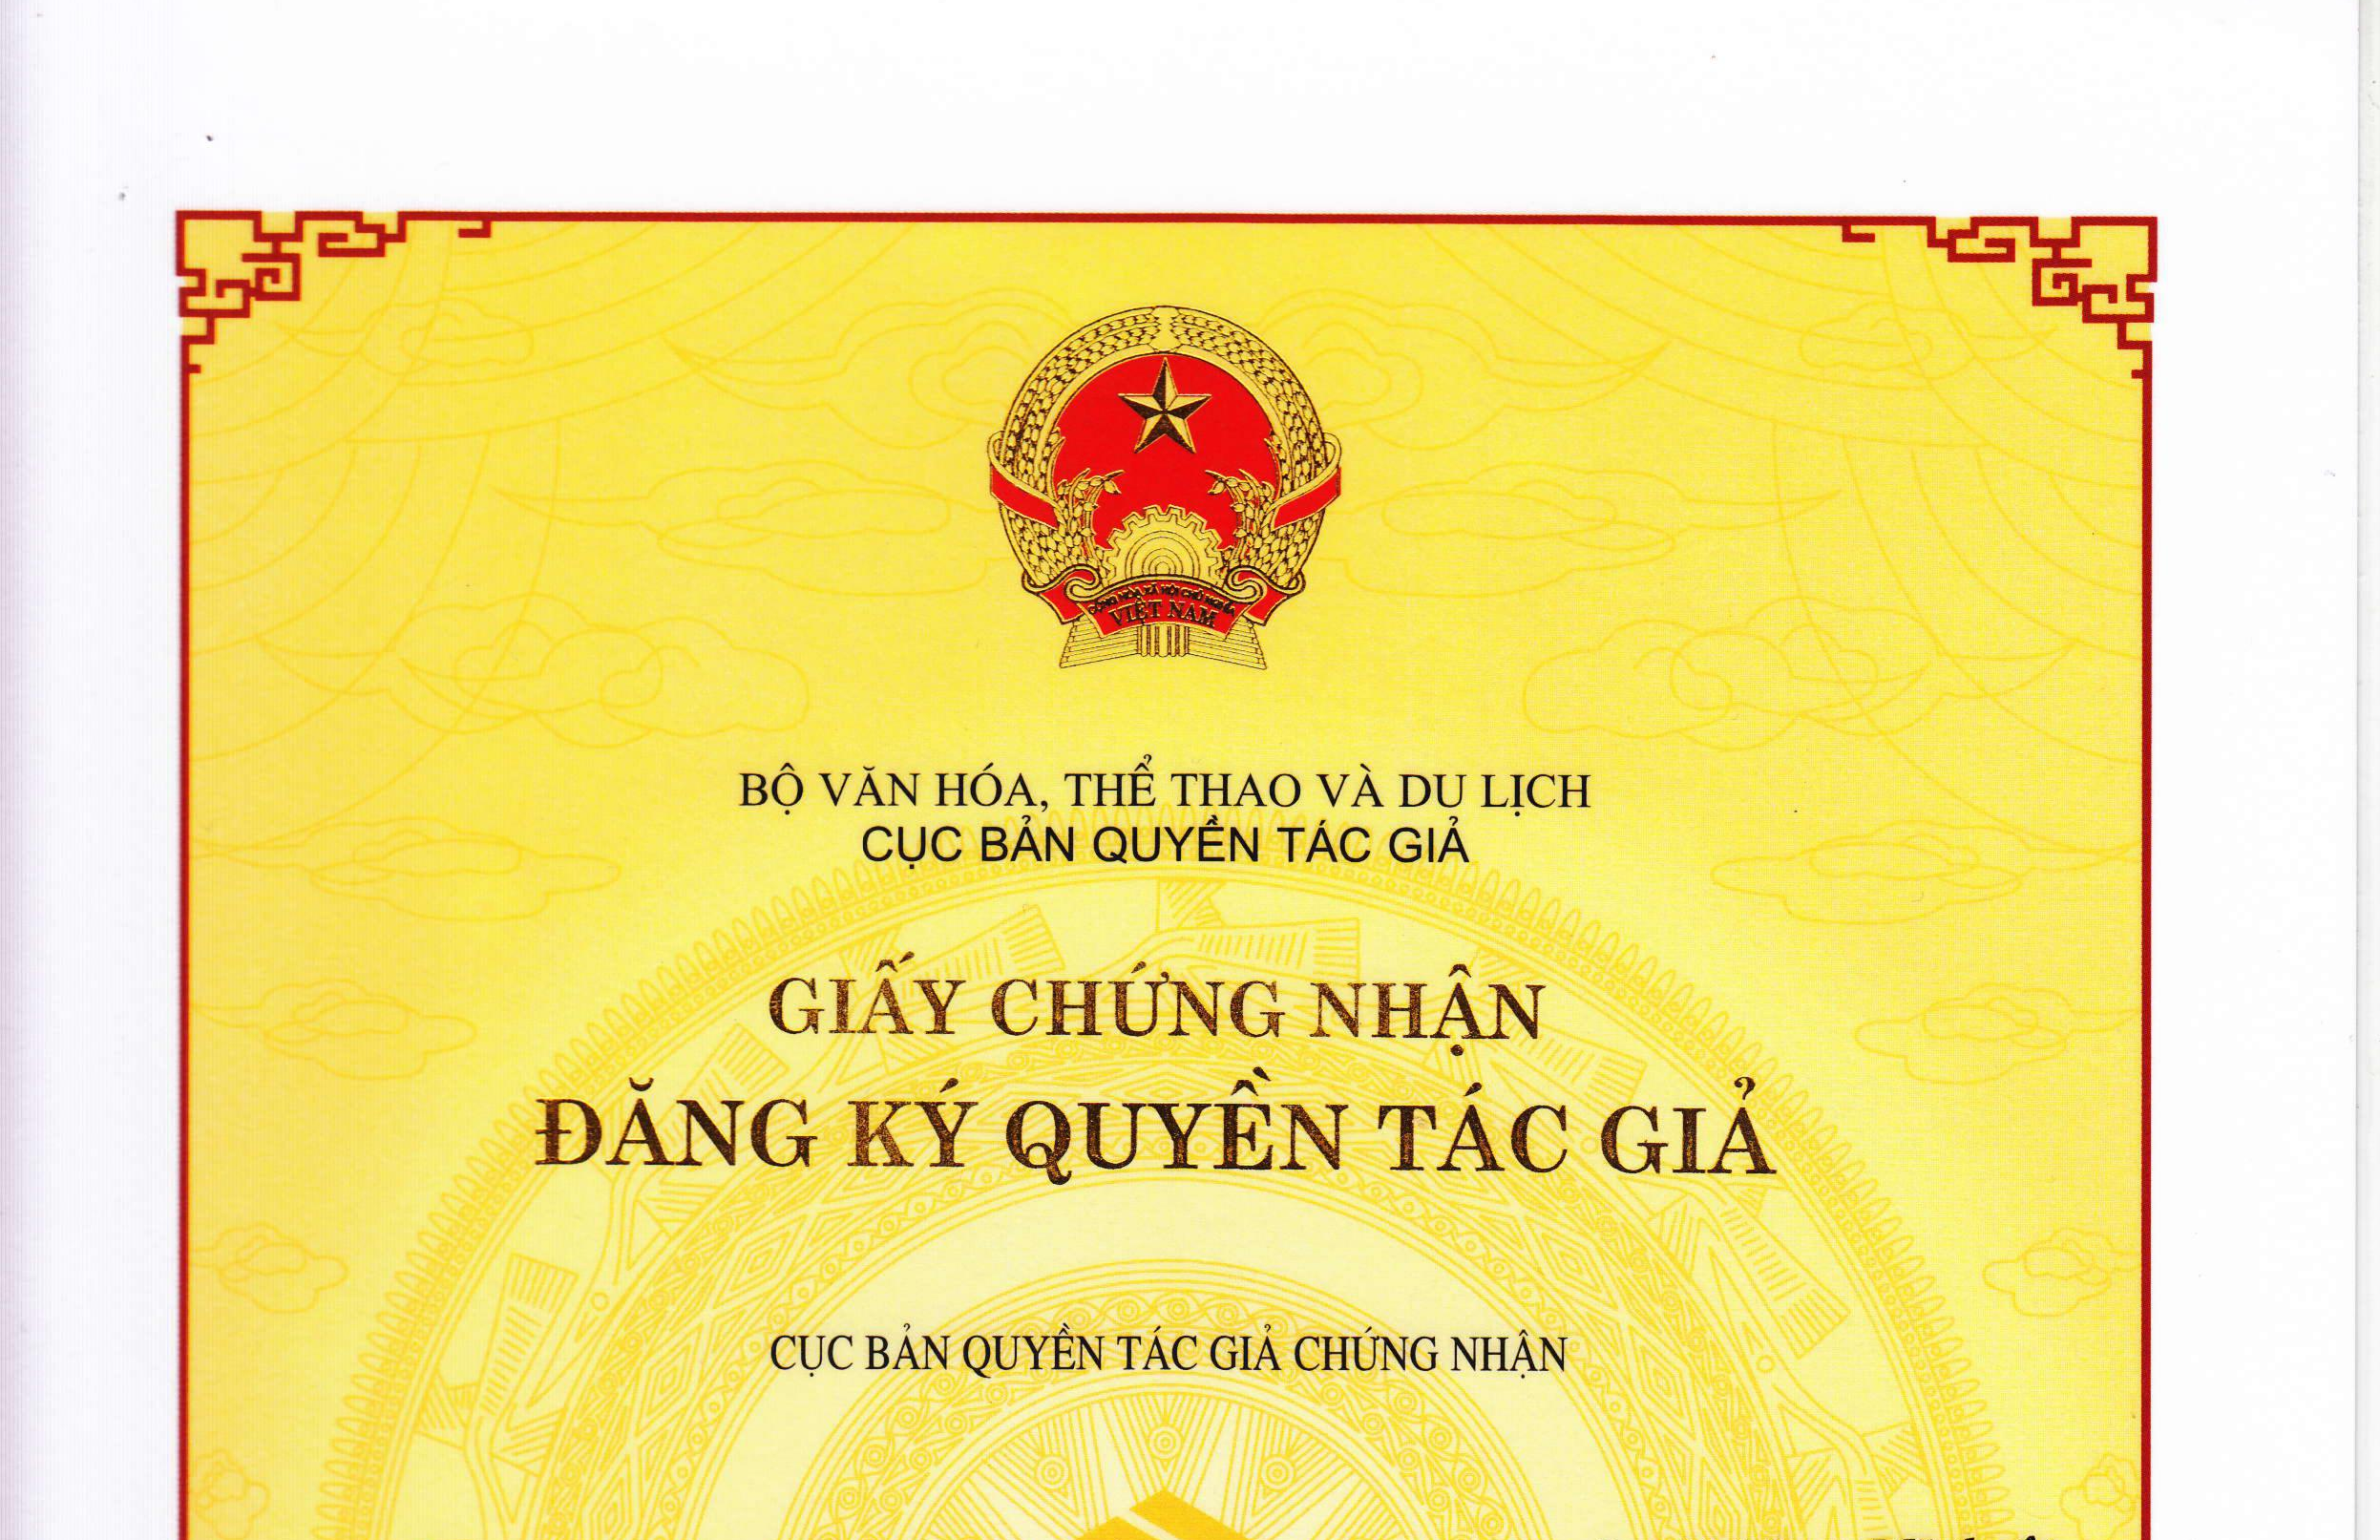 Phuong-phap-da-duoc-dang-ky-ban-quyen-tac-gia-TraderViet2.png